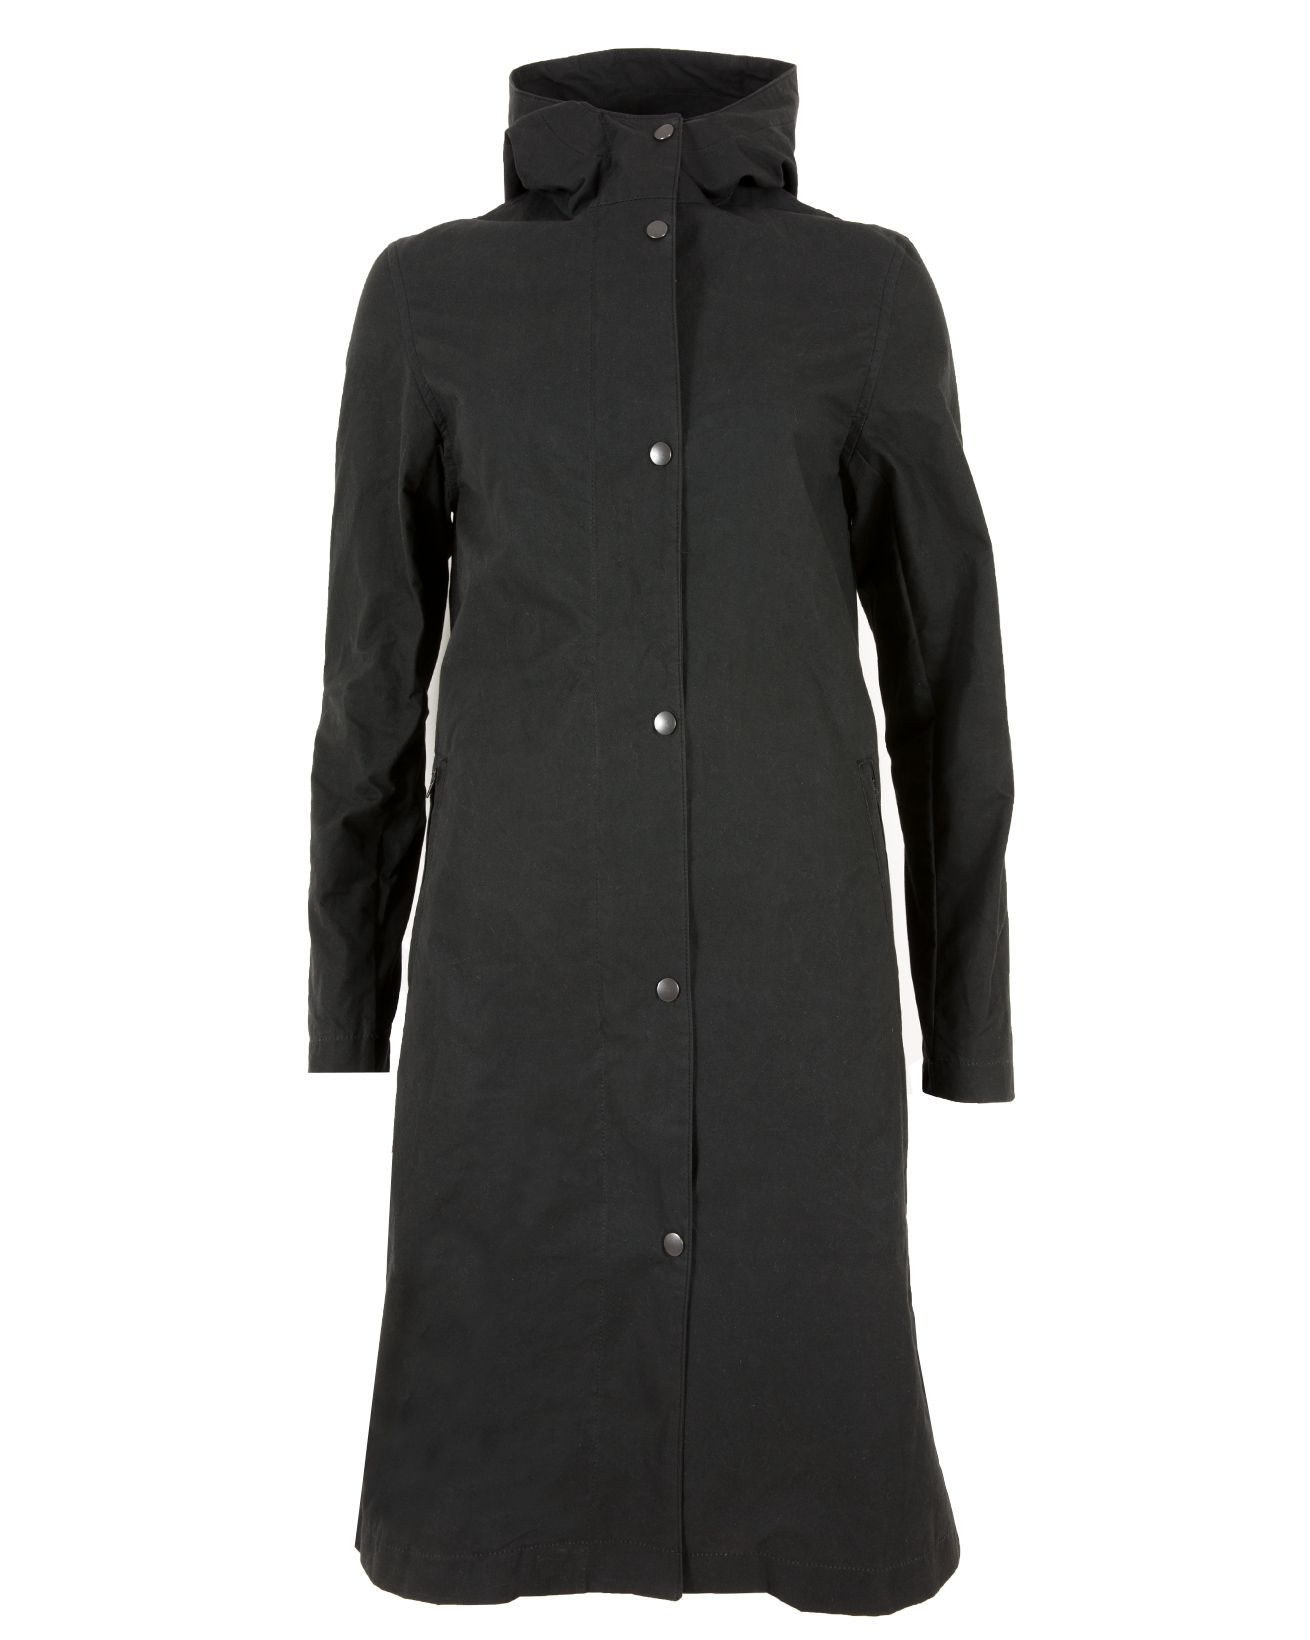 7507-long wax rain coat-black-front.jpg